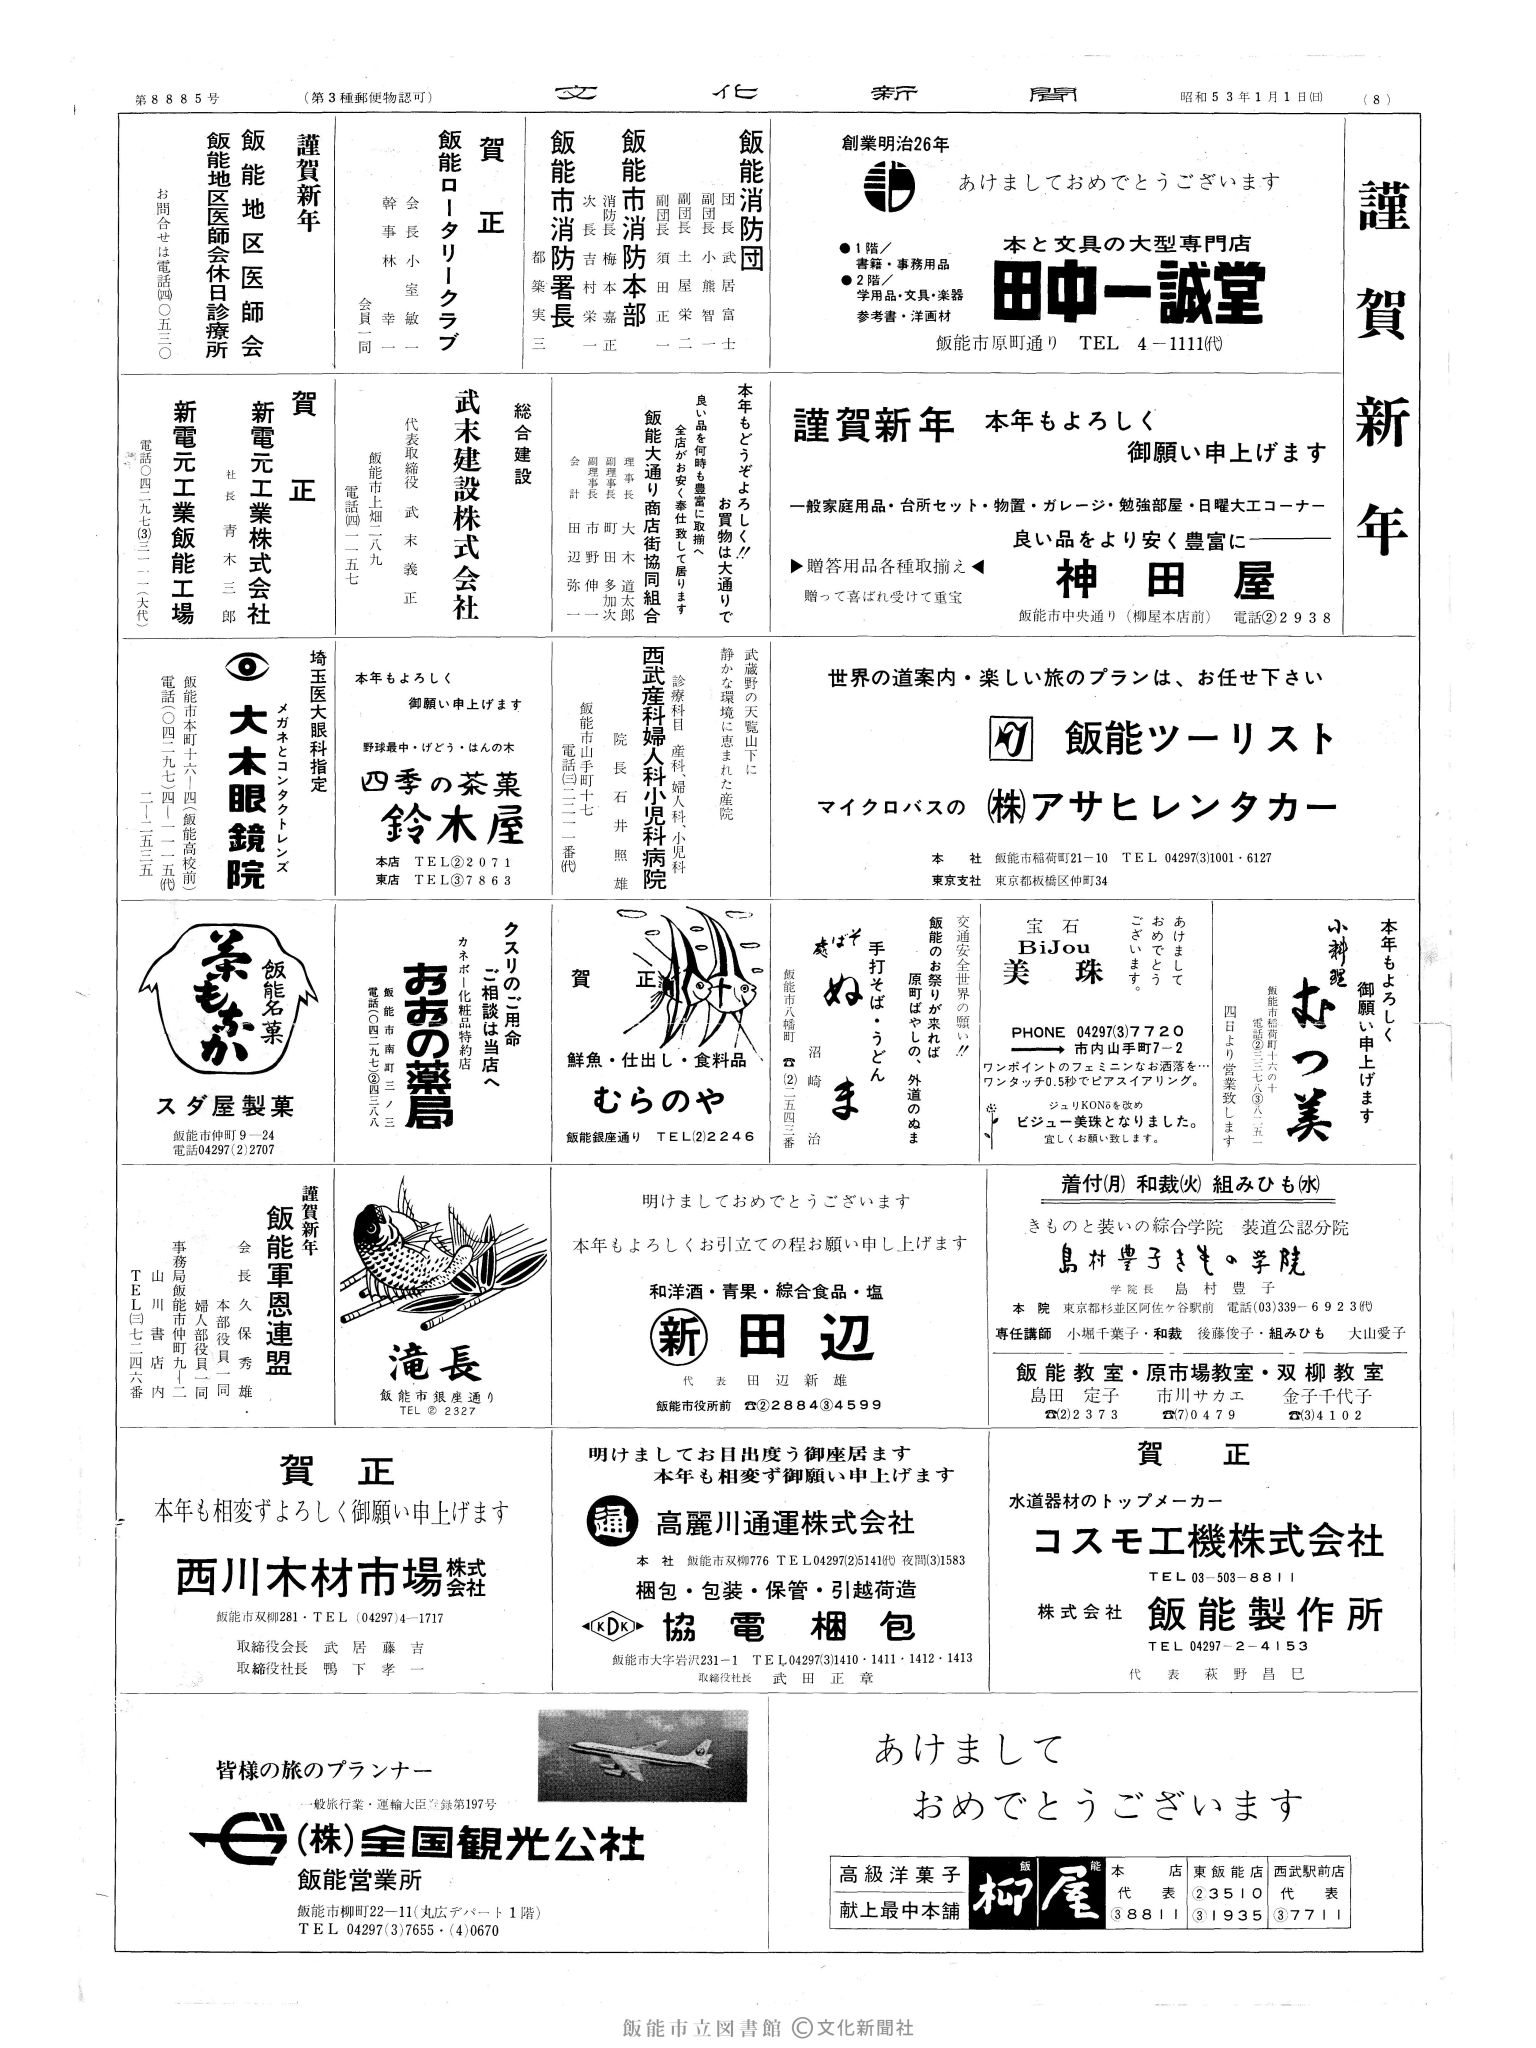 昭和53年1月1日8面 (第8885号) 広告ページ